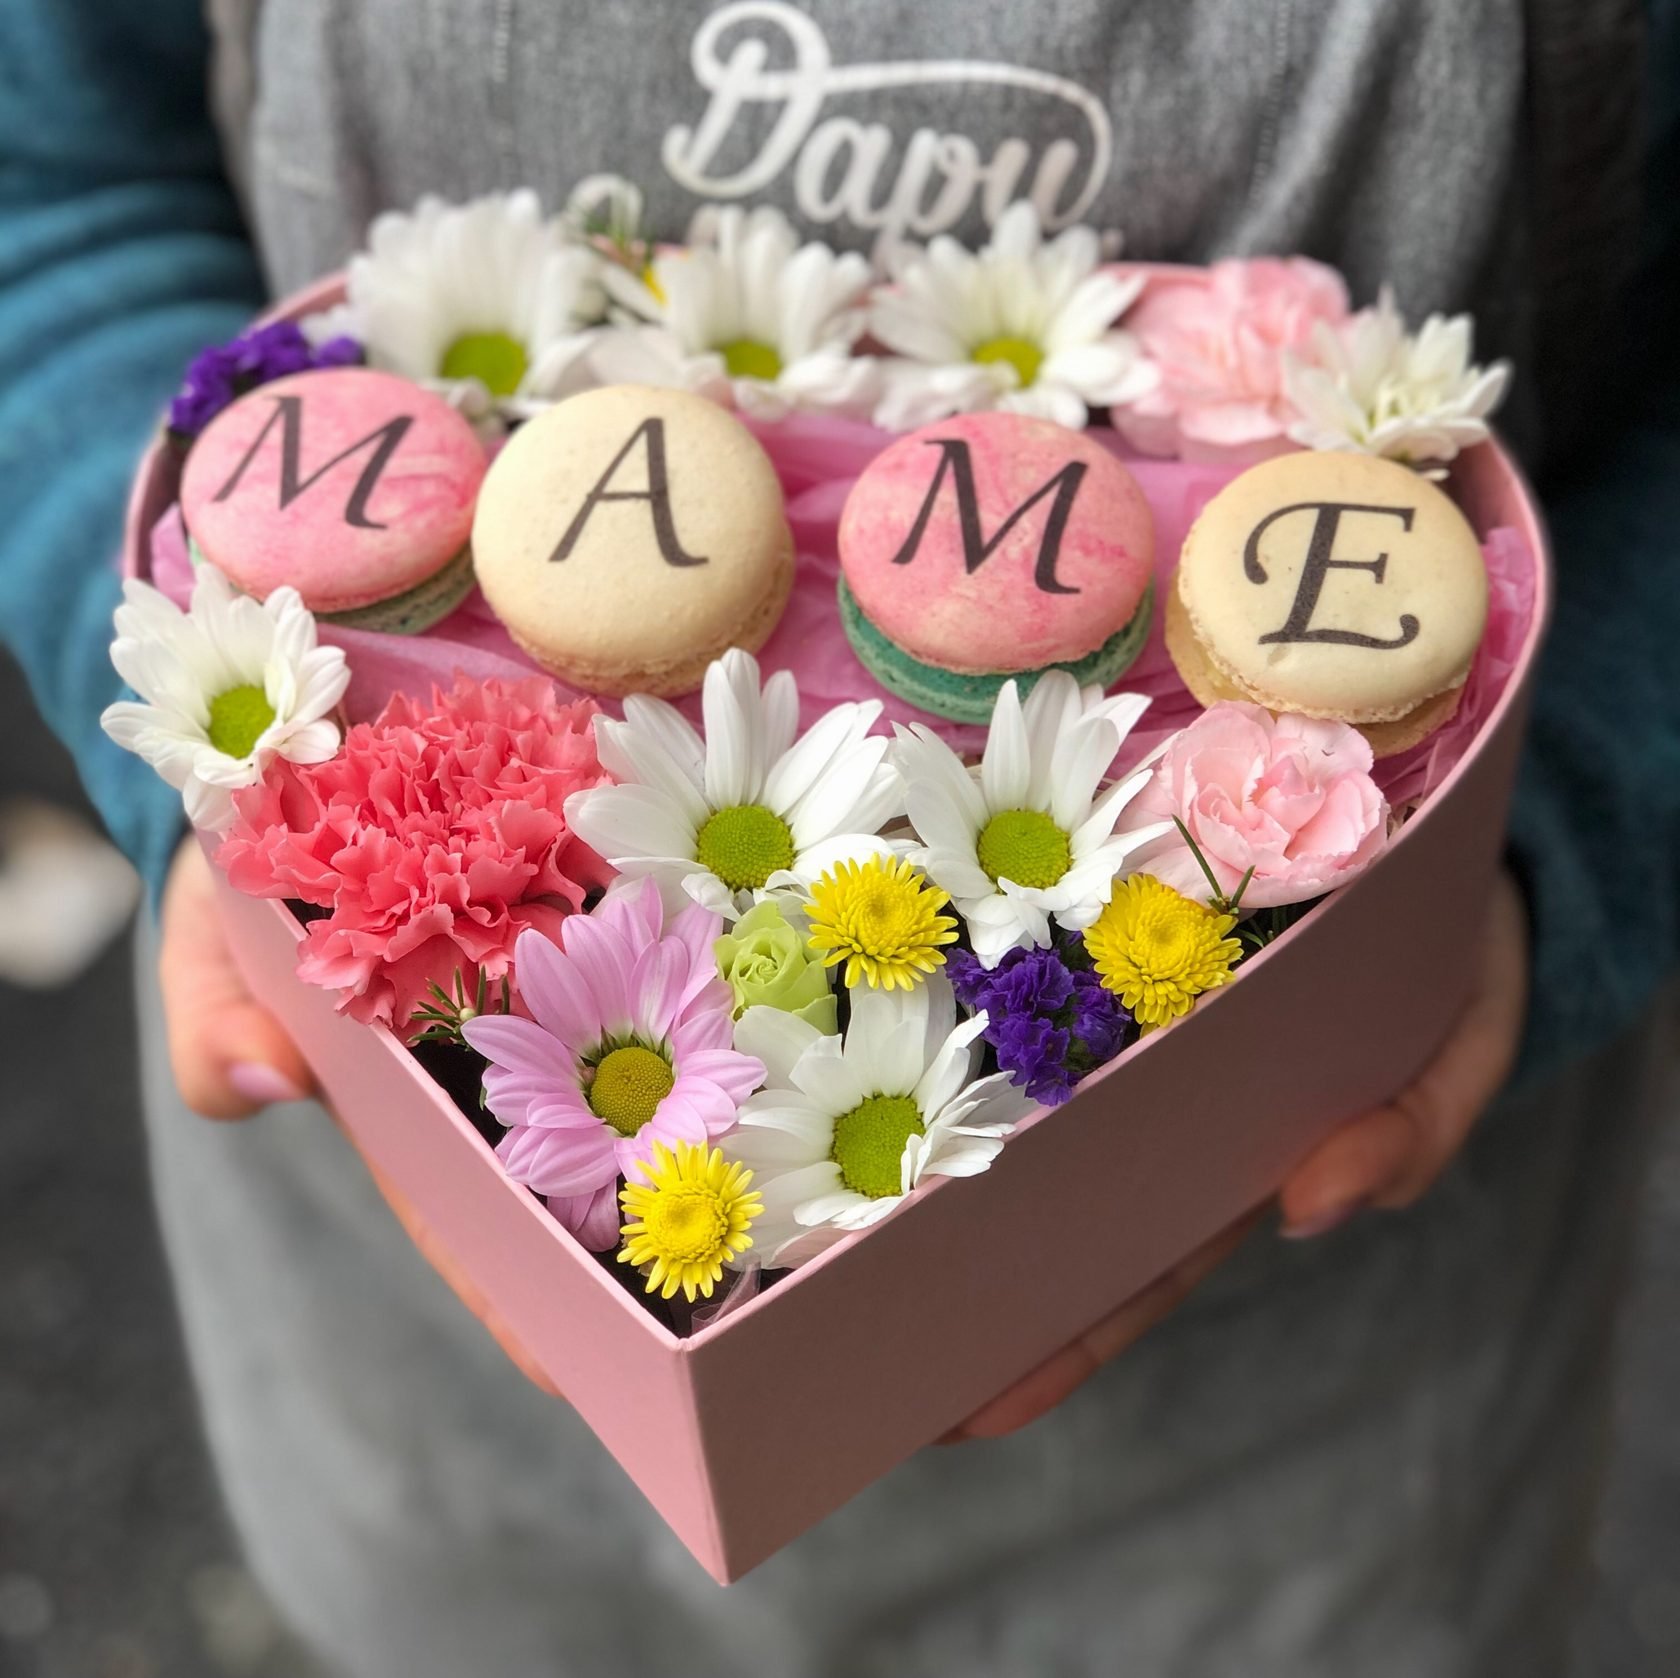 Купить букеты маме. Букет цветов для мамы. Букет маме на день рождения. Красивый букет для мамы. Красивый букет цветов для мамы.